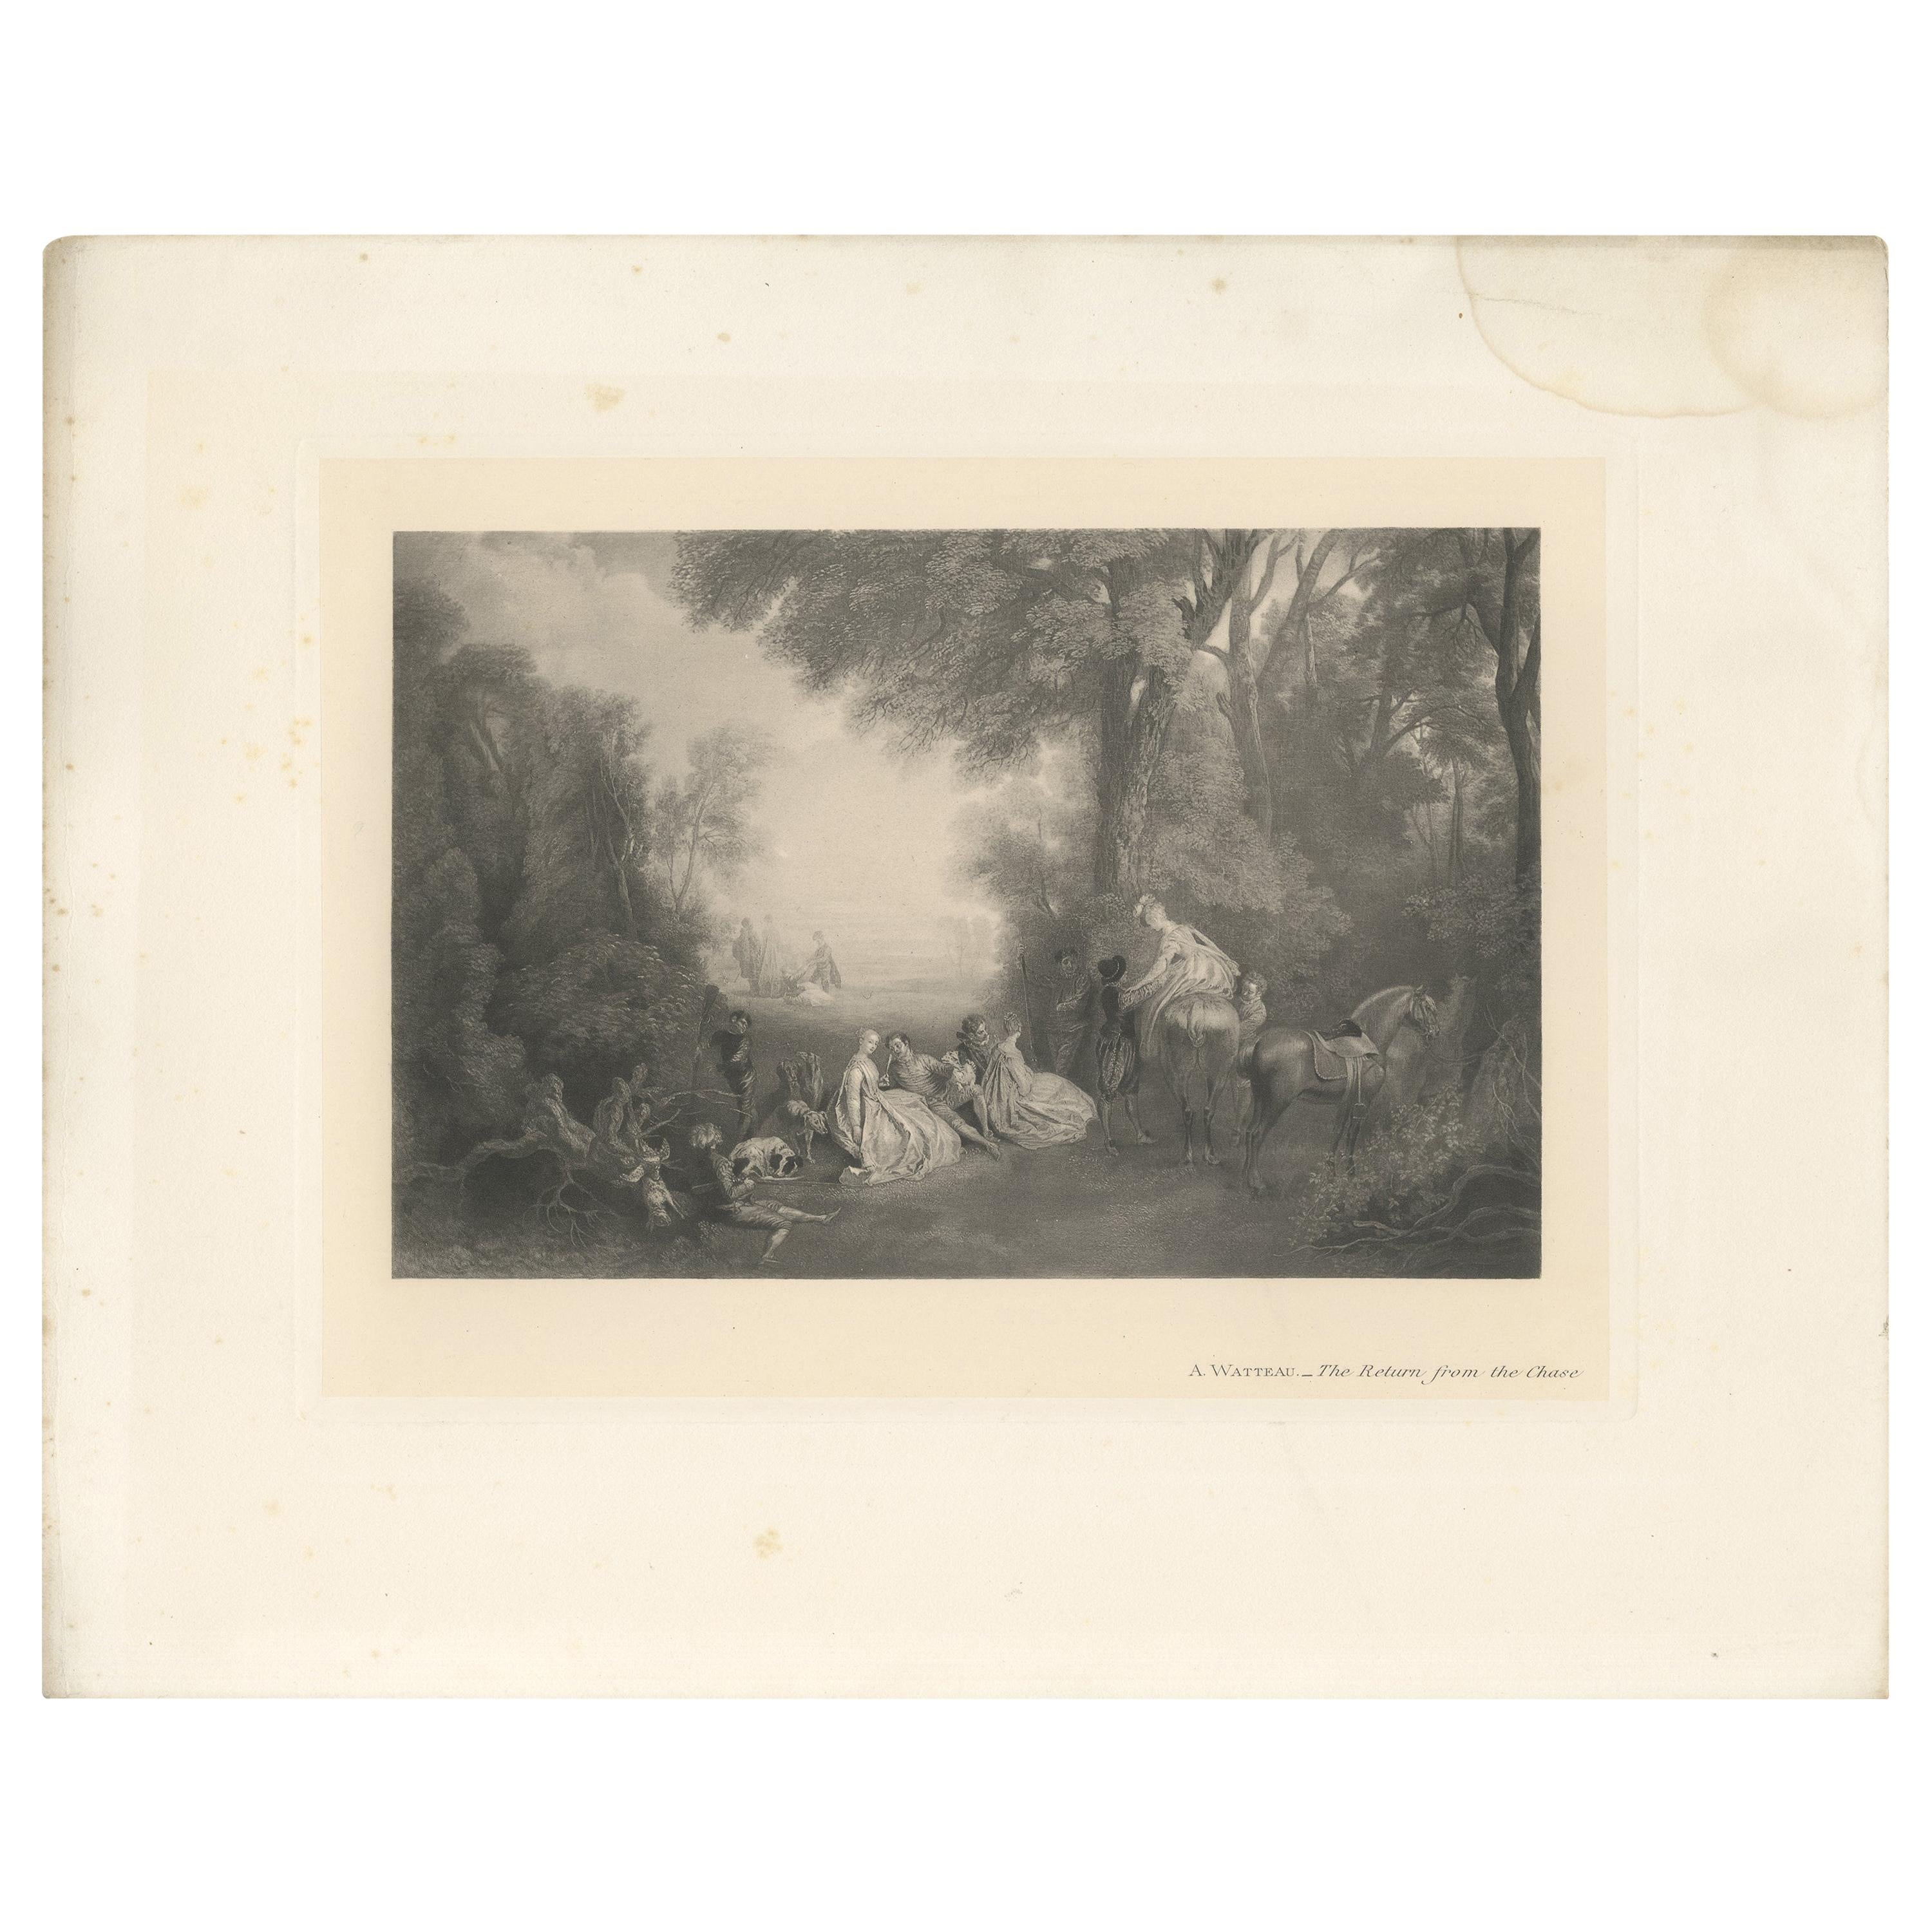 Antiker Druck von 'The Return from the Chase', hergestellt nach einem. Watteau, 1902